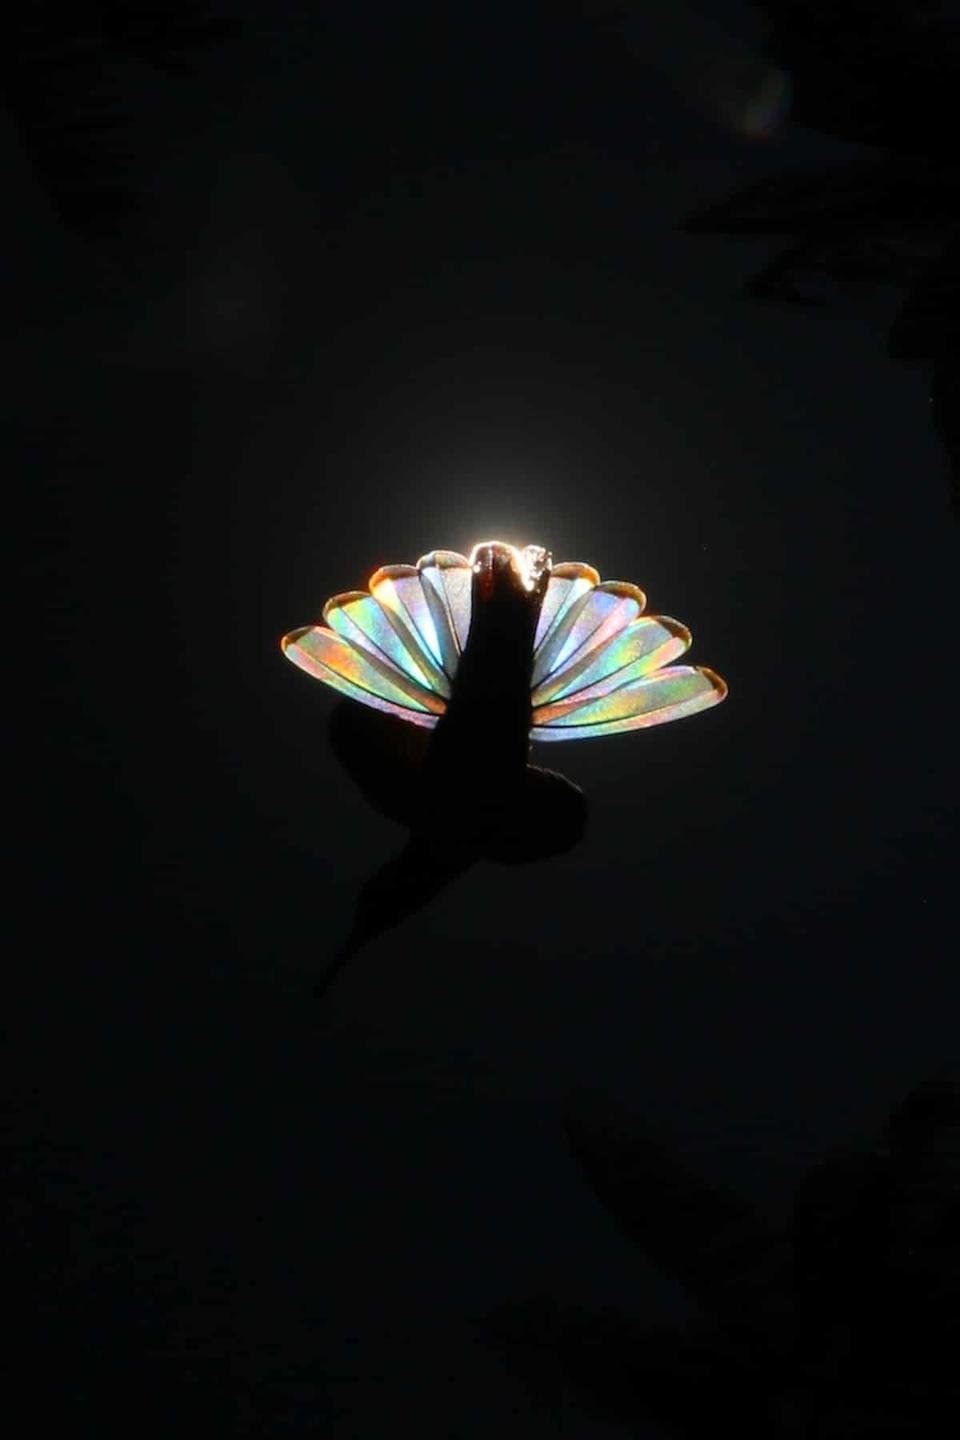 Природное явление превращает крылья колибри в крошечную радугу